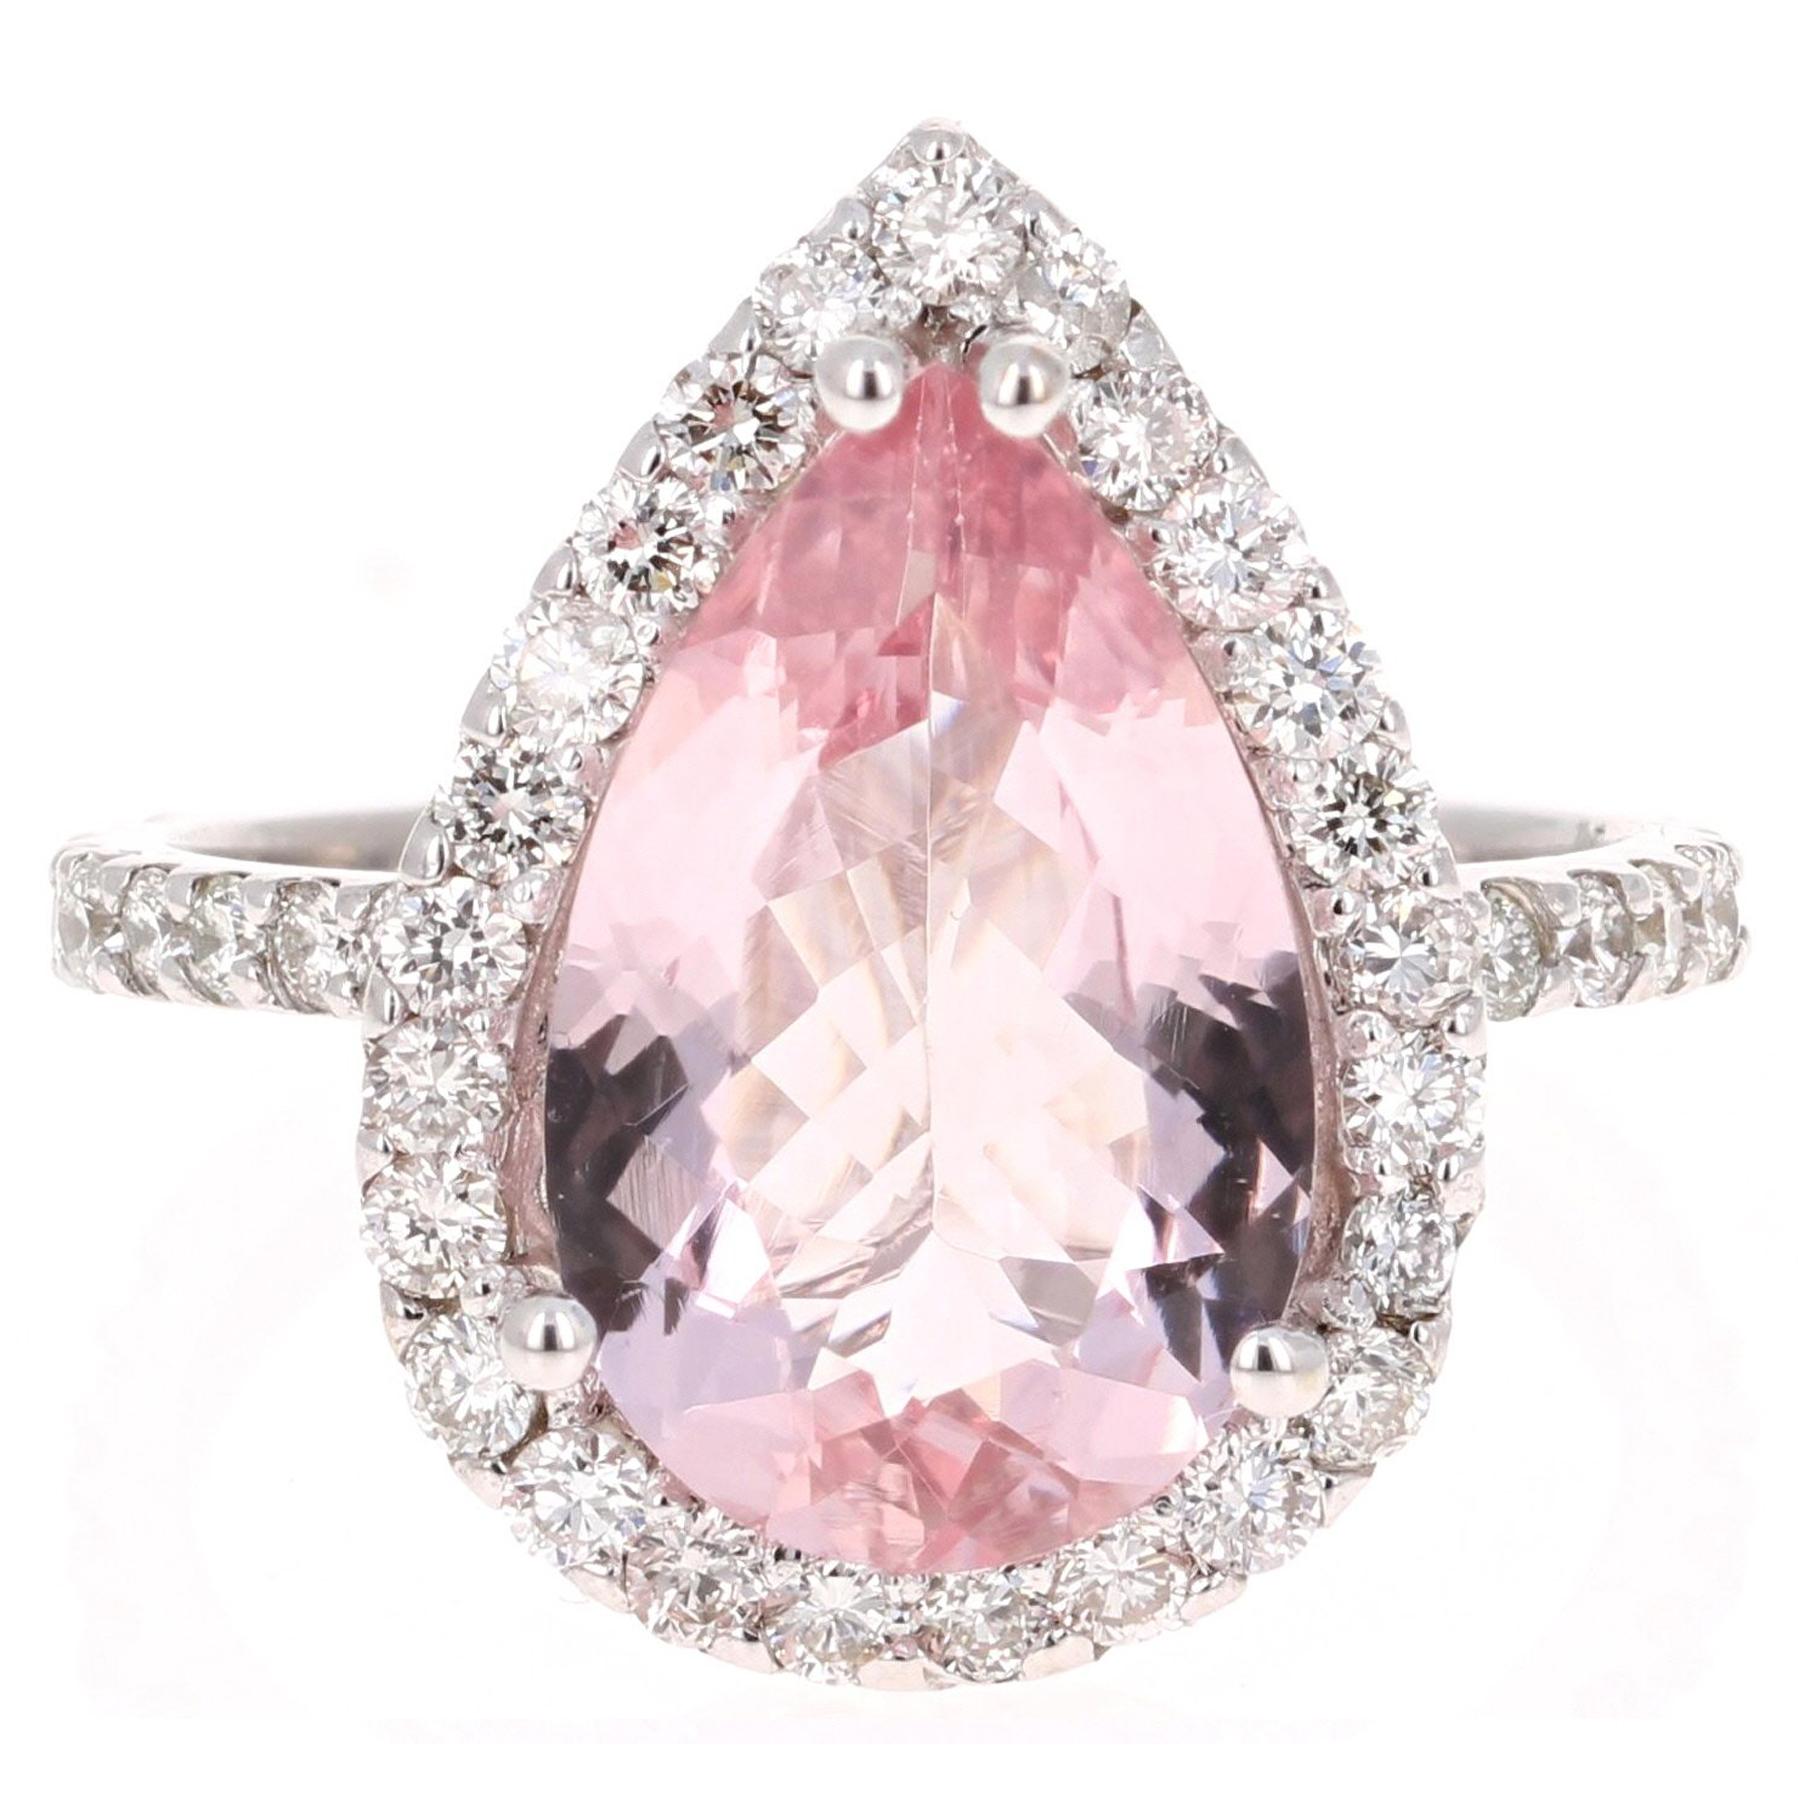 4.11 Carat Pear Cut Pink Morganite Diamond 18 Karat White Gold Engagement Ring